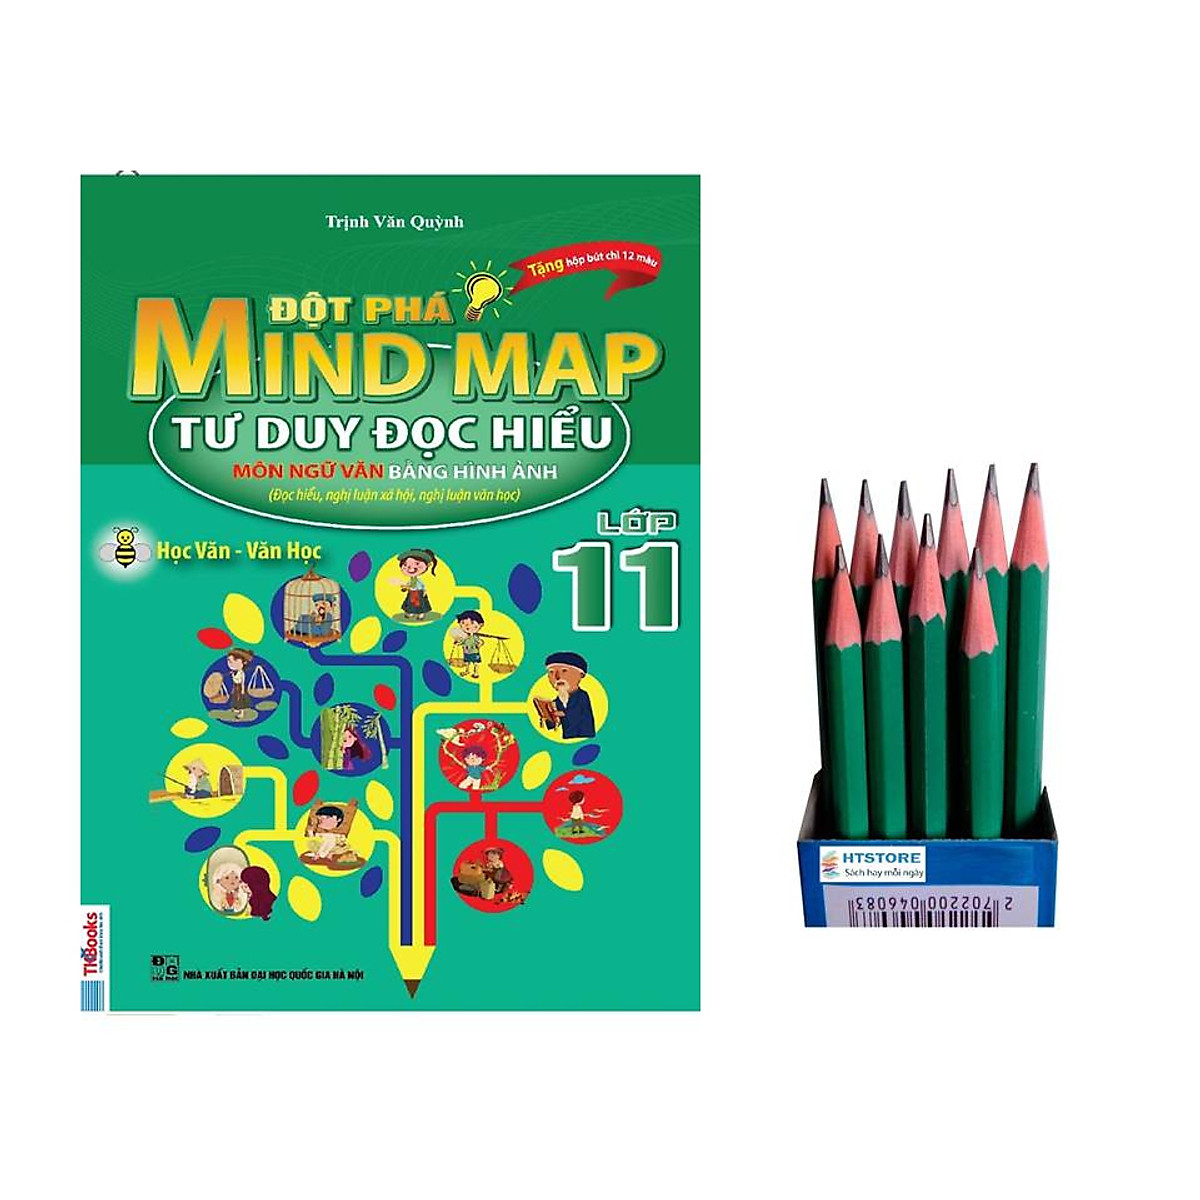 Ngữ Văn 11: Đột phá mind map - tư duy đọc hiểu môn ngữ văn bằng hình ảnh lớp 11 ( tặng kèm 12 cái bút chì)